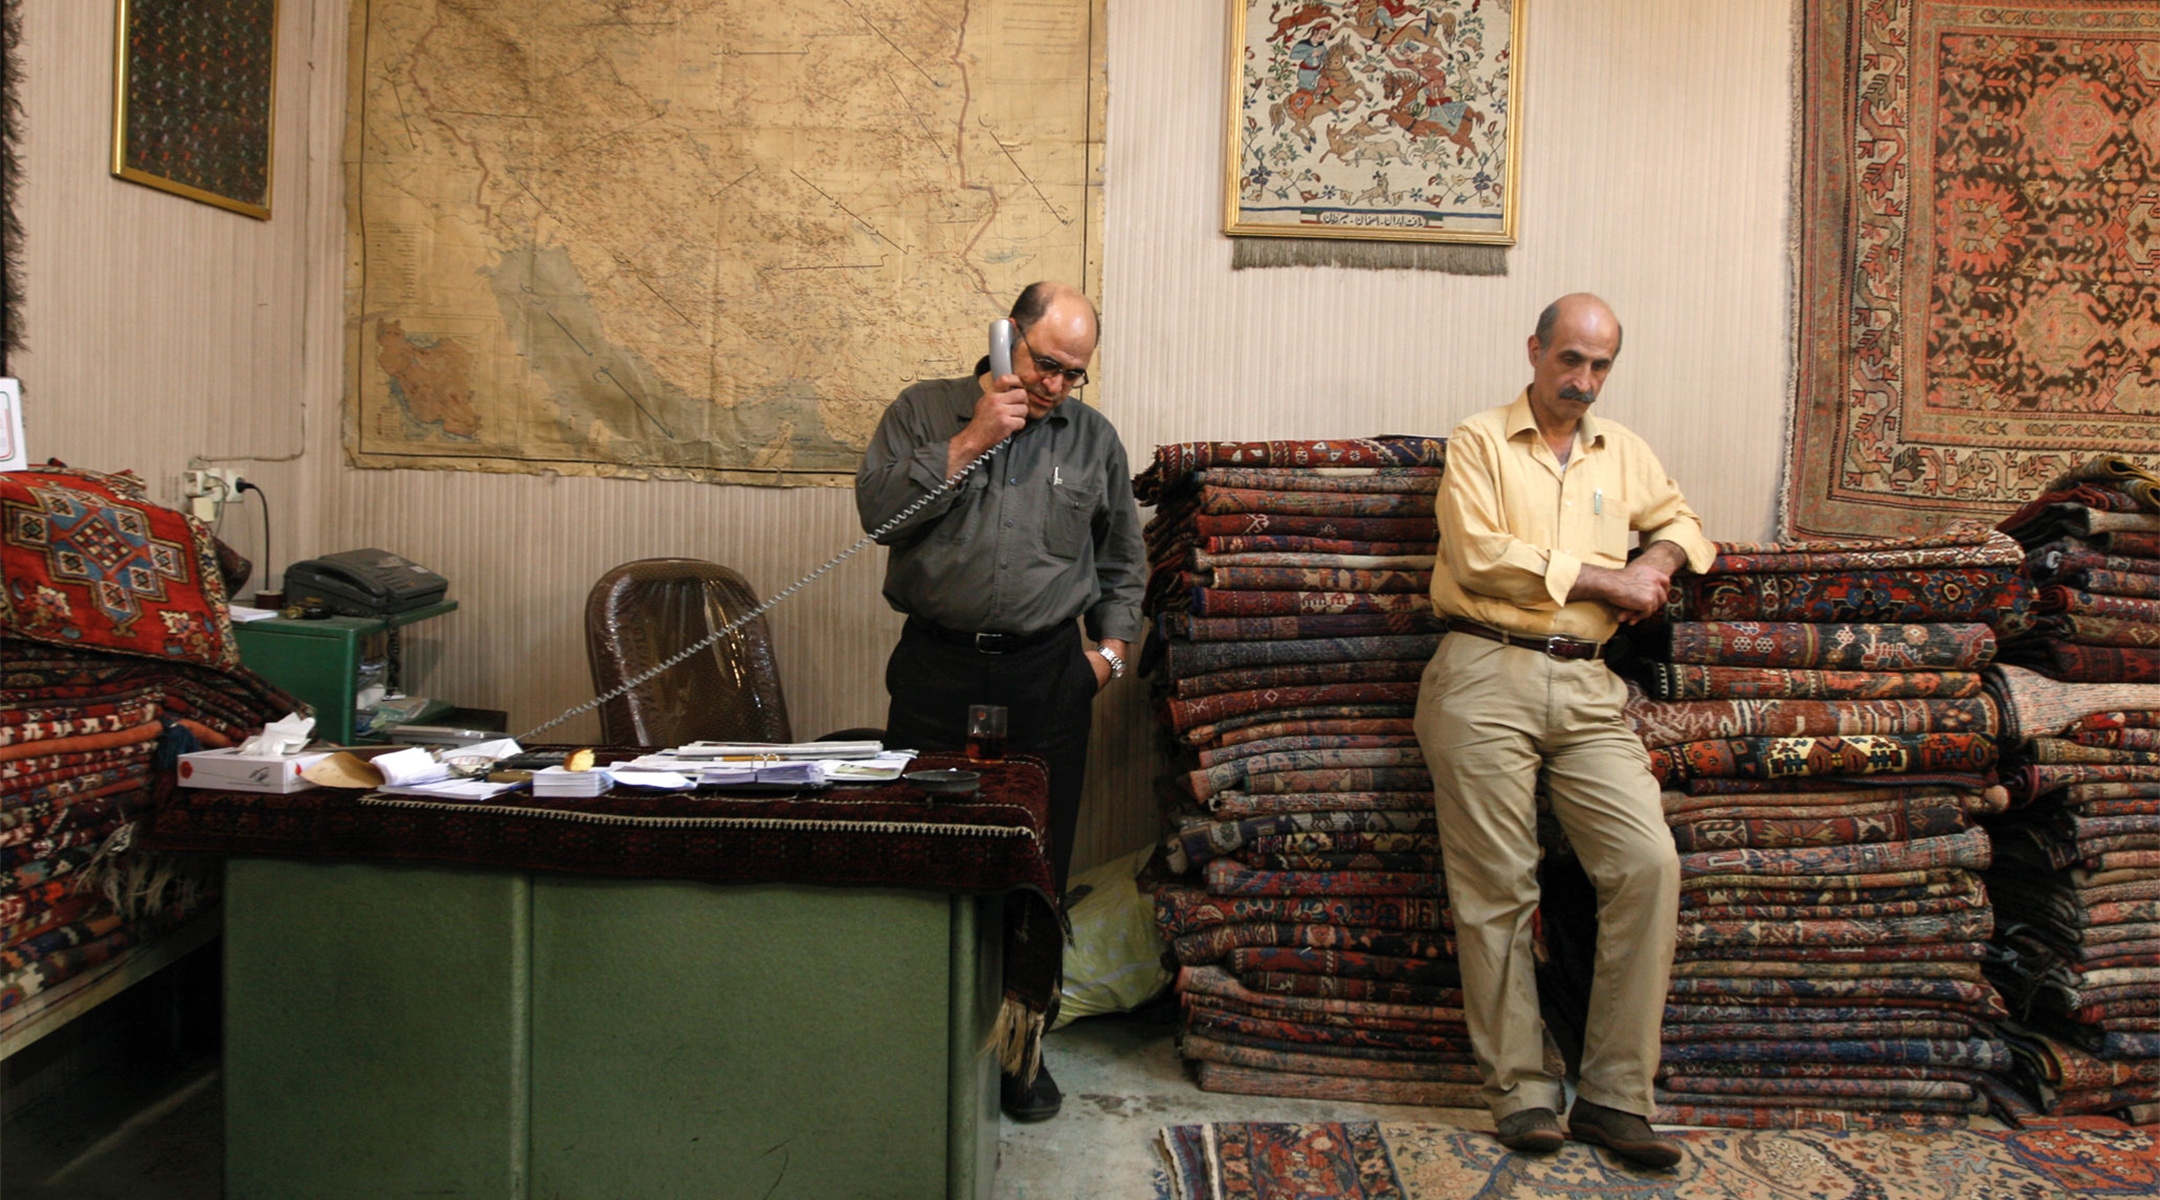 A Jewish carpet shop.